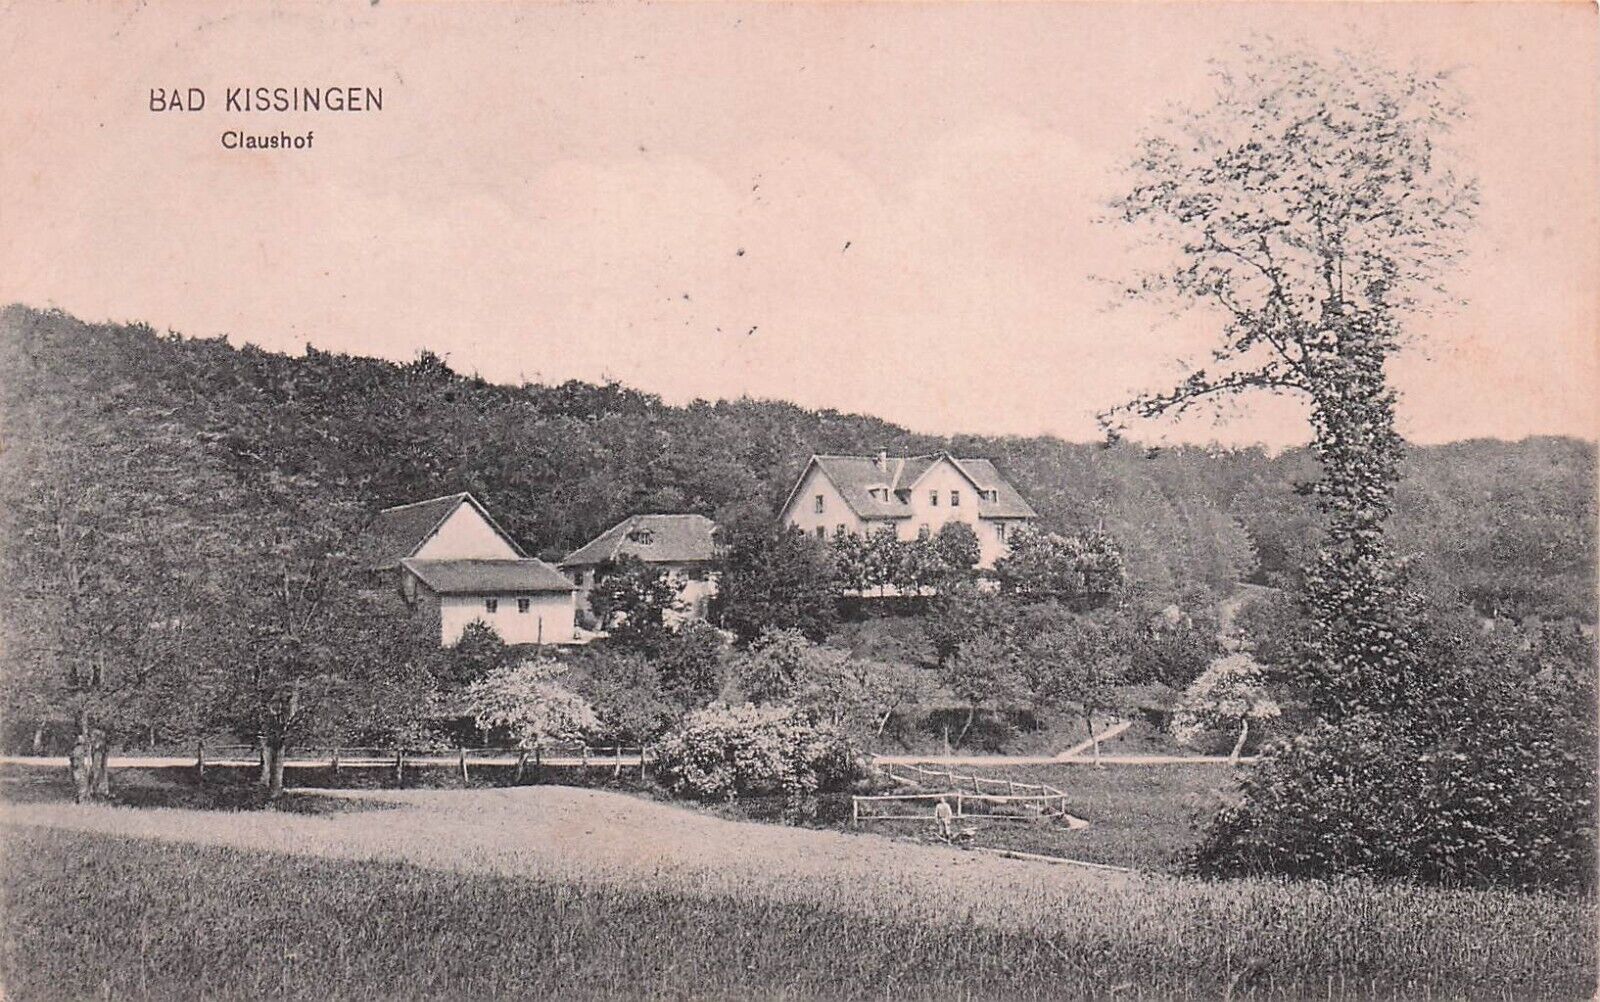 Postcard Vin (1) DEU, Bad-Kissingen Claushot 1908 KSS66 P 6/14/1909 (416)